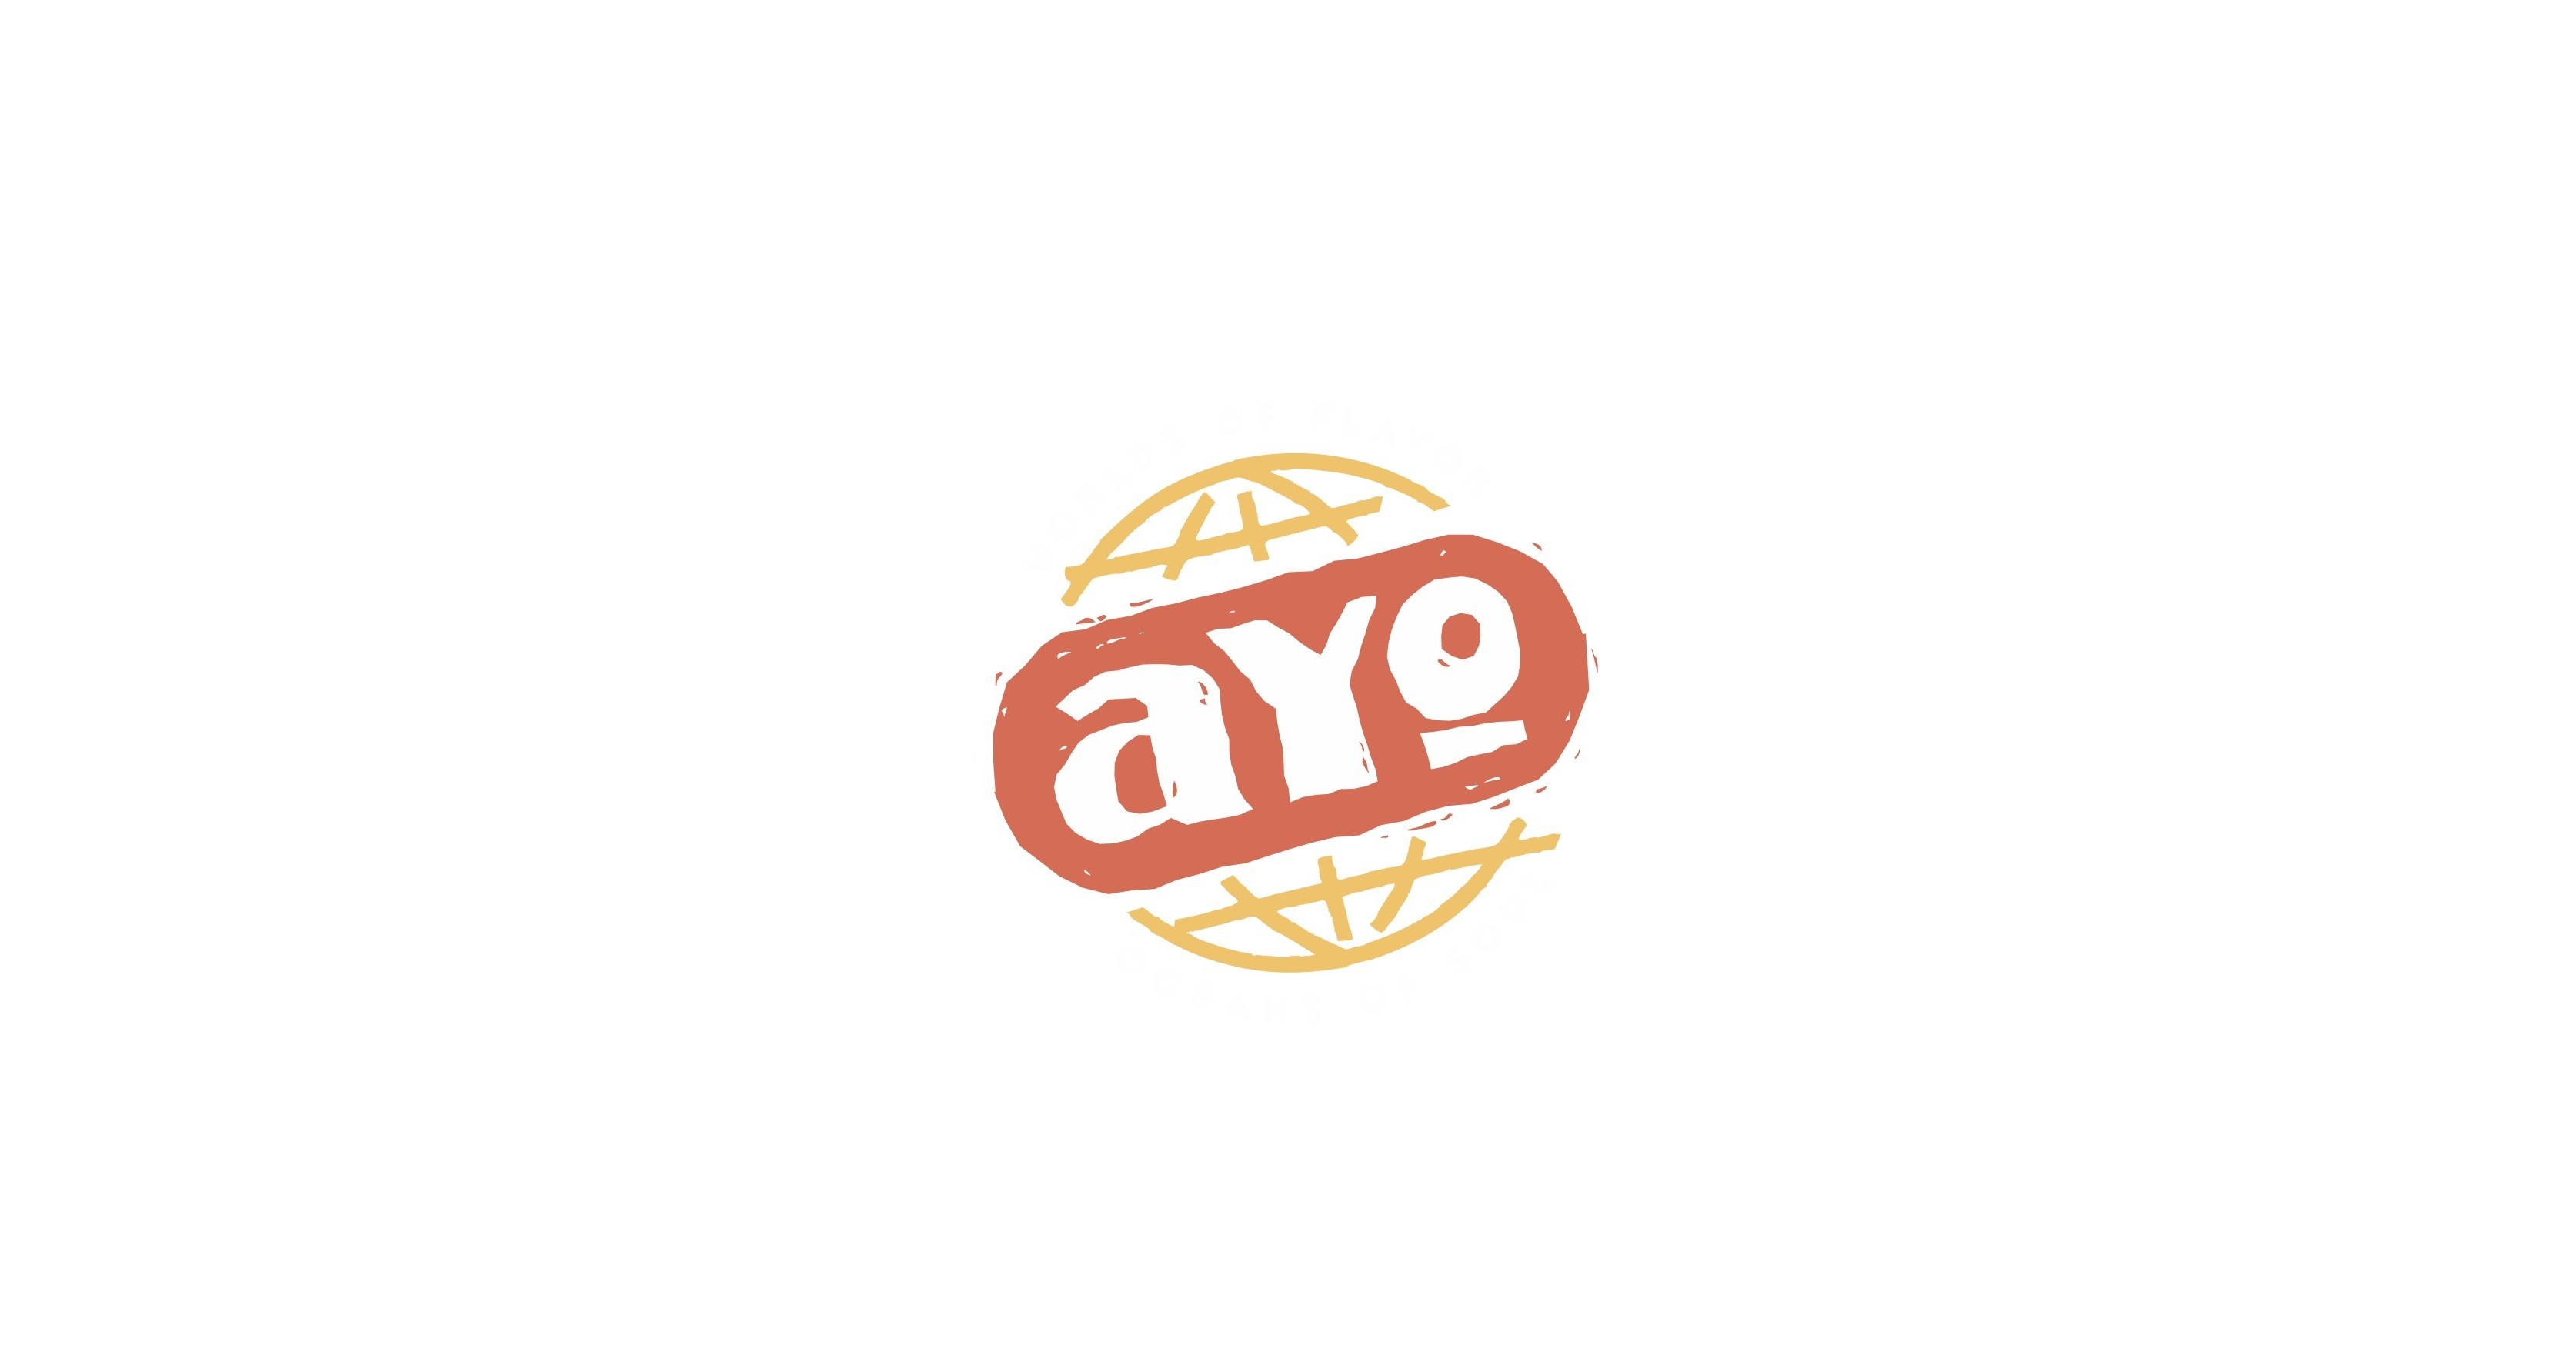 AYO Foods Shito Sauce - 8.5oz